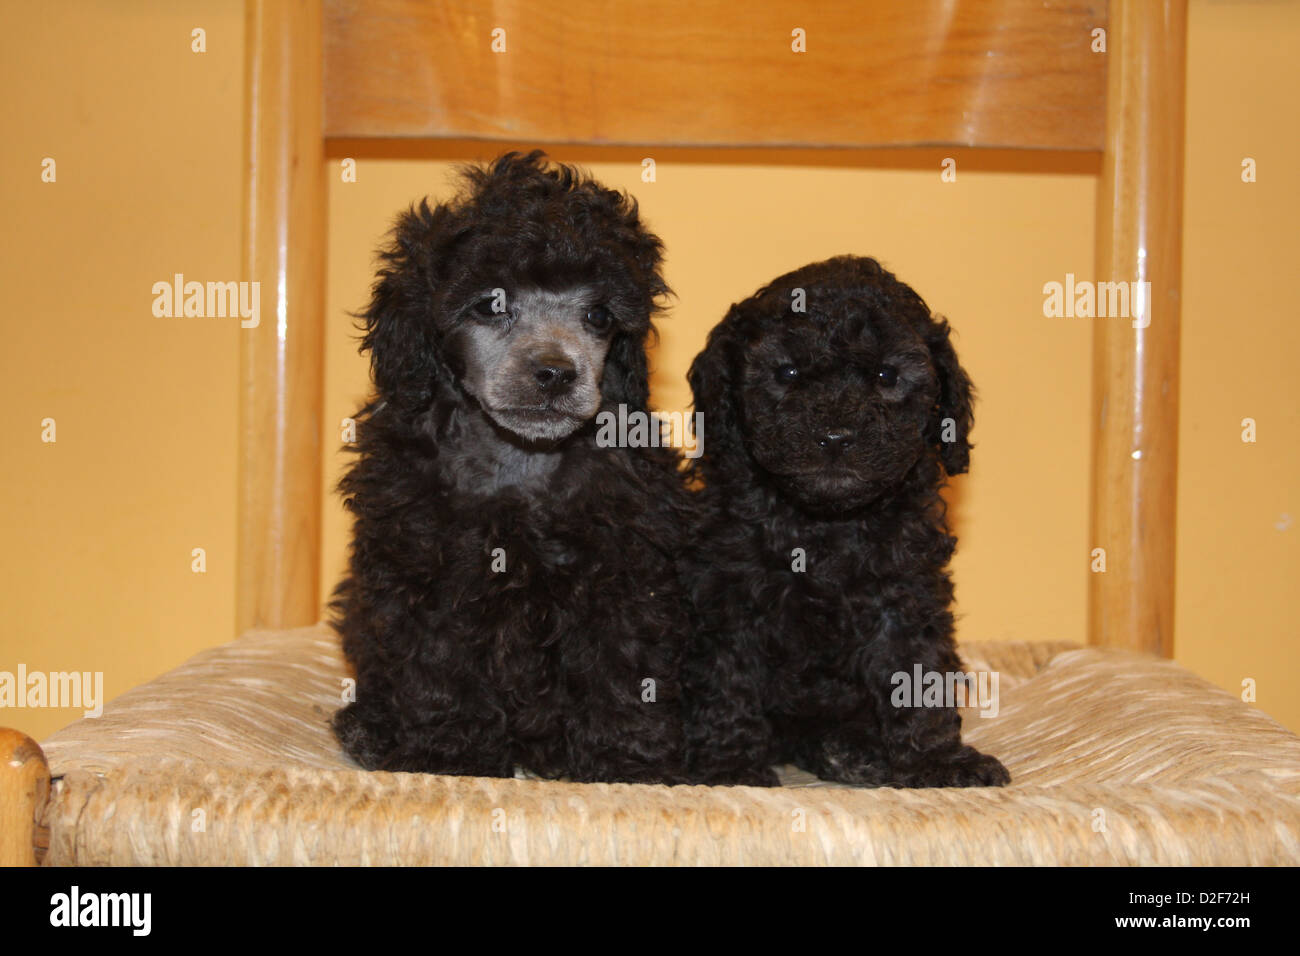 Pudel caniche chien / / Caniche toy , deux chiots d'âges différents (noir) assis sur une chaise Banque D'Images